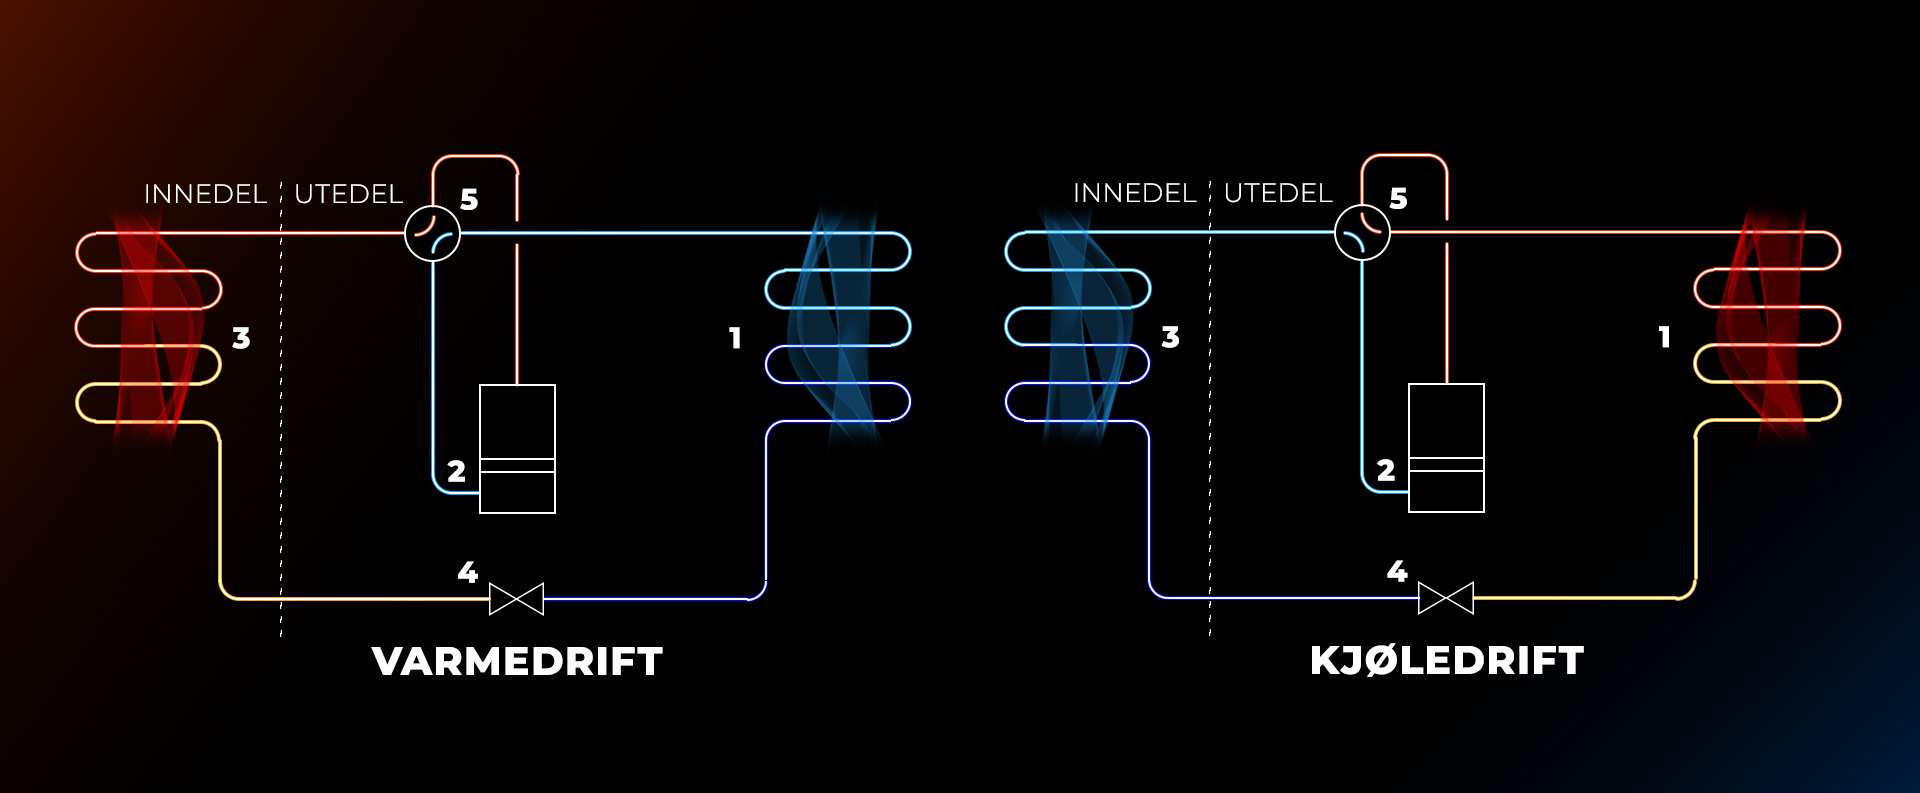 Grafisk fremstilling av hvordan varmepumpen fungerer i varmedrift og kjøledrift. Grafikk. 